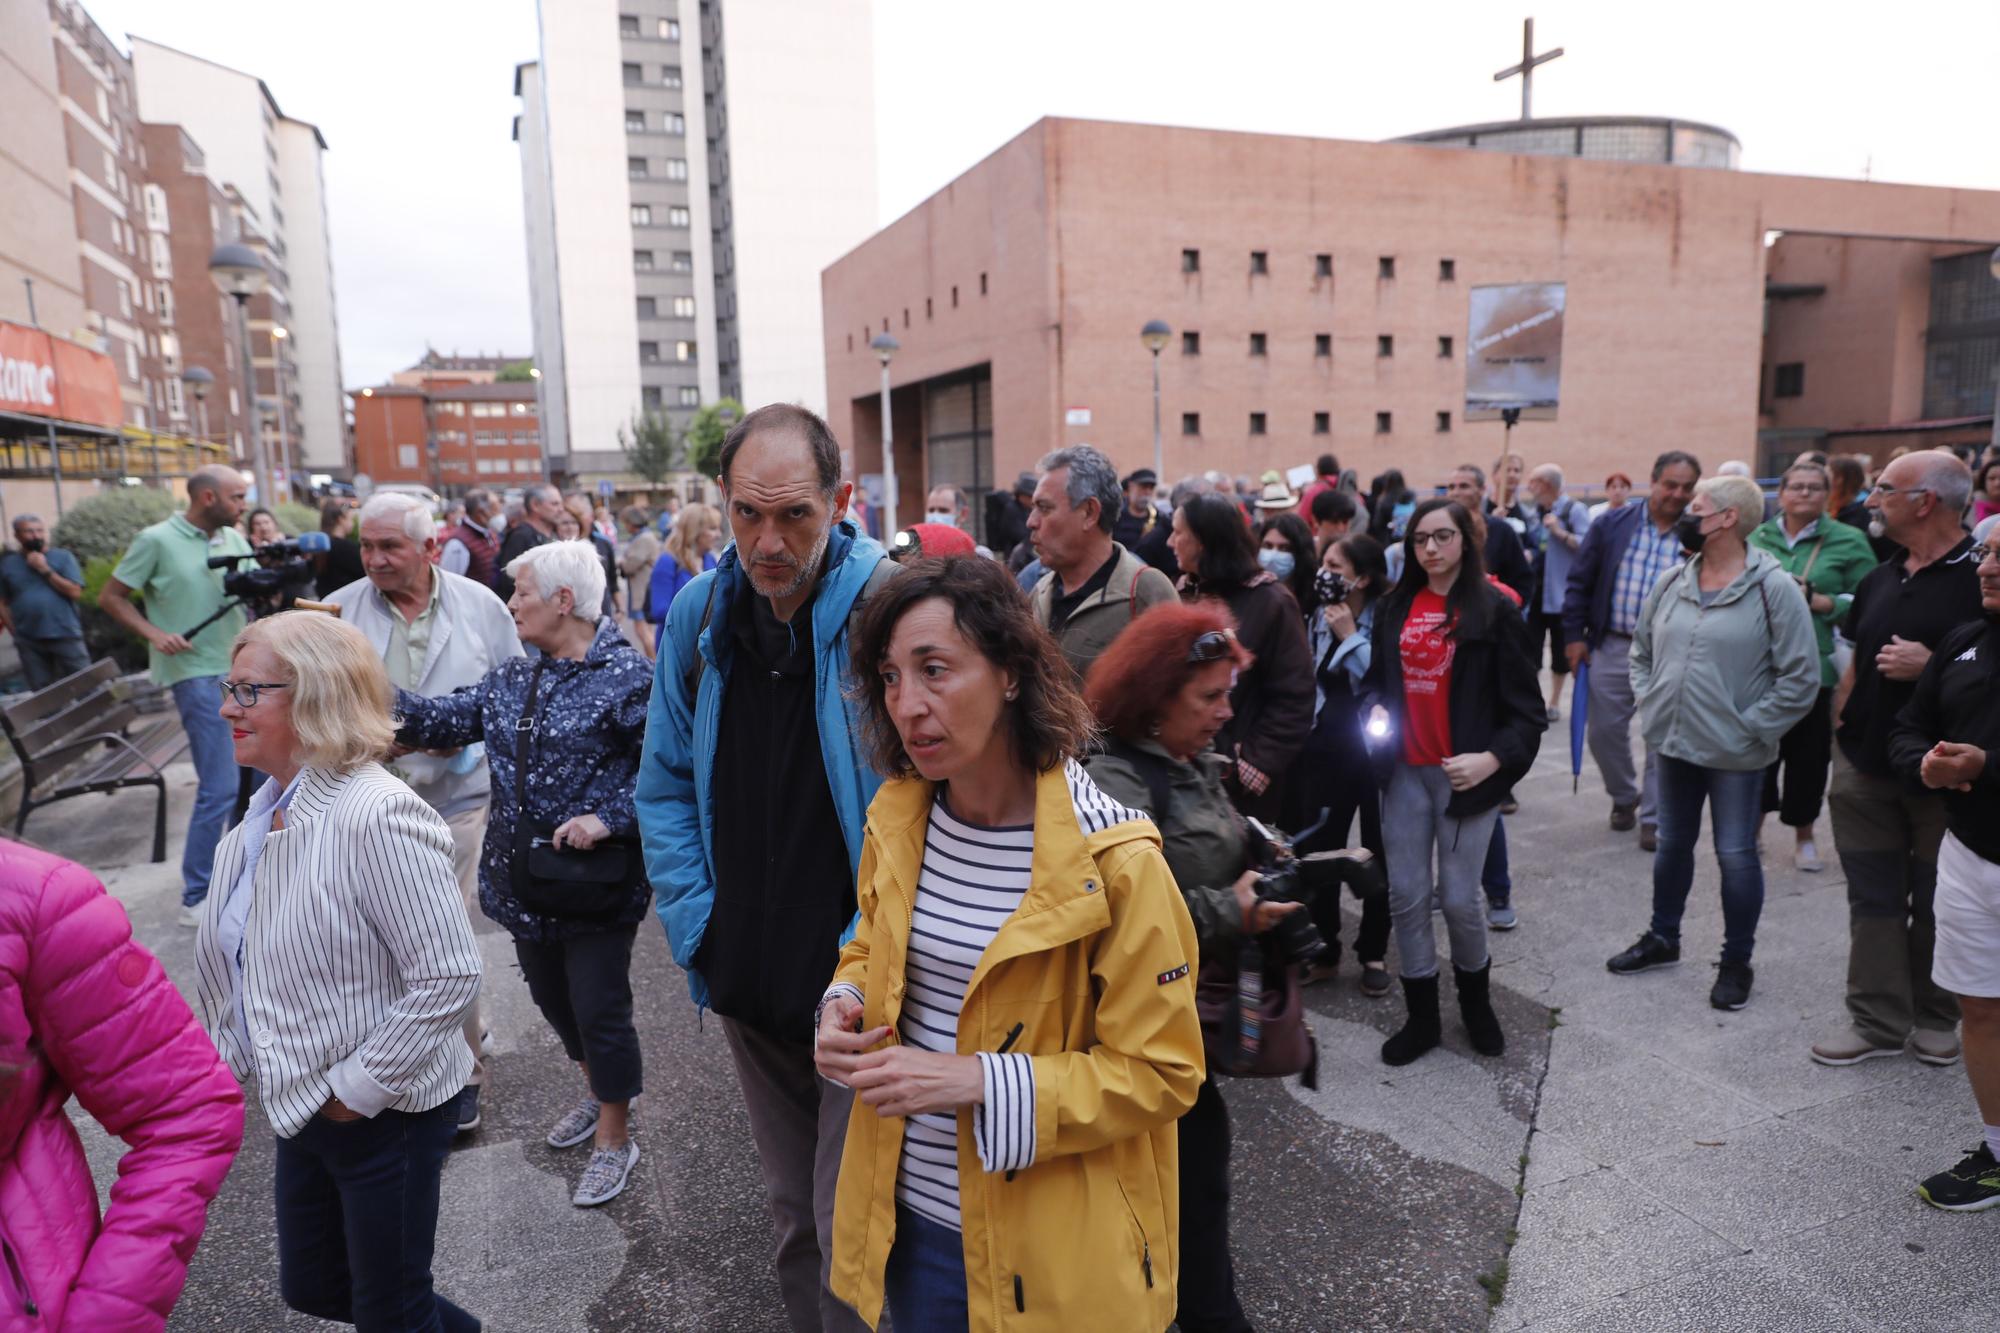 Manifestación de los vecinos de la zona oeste de Gijón